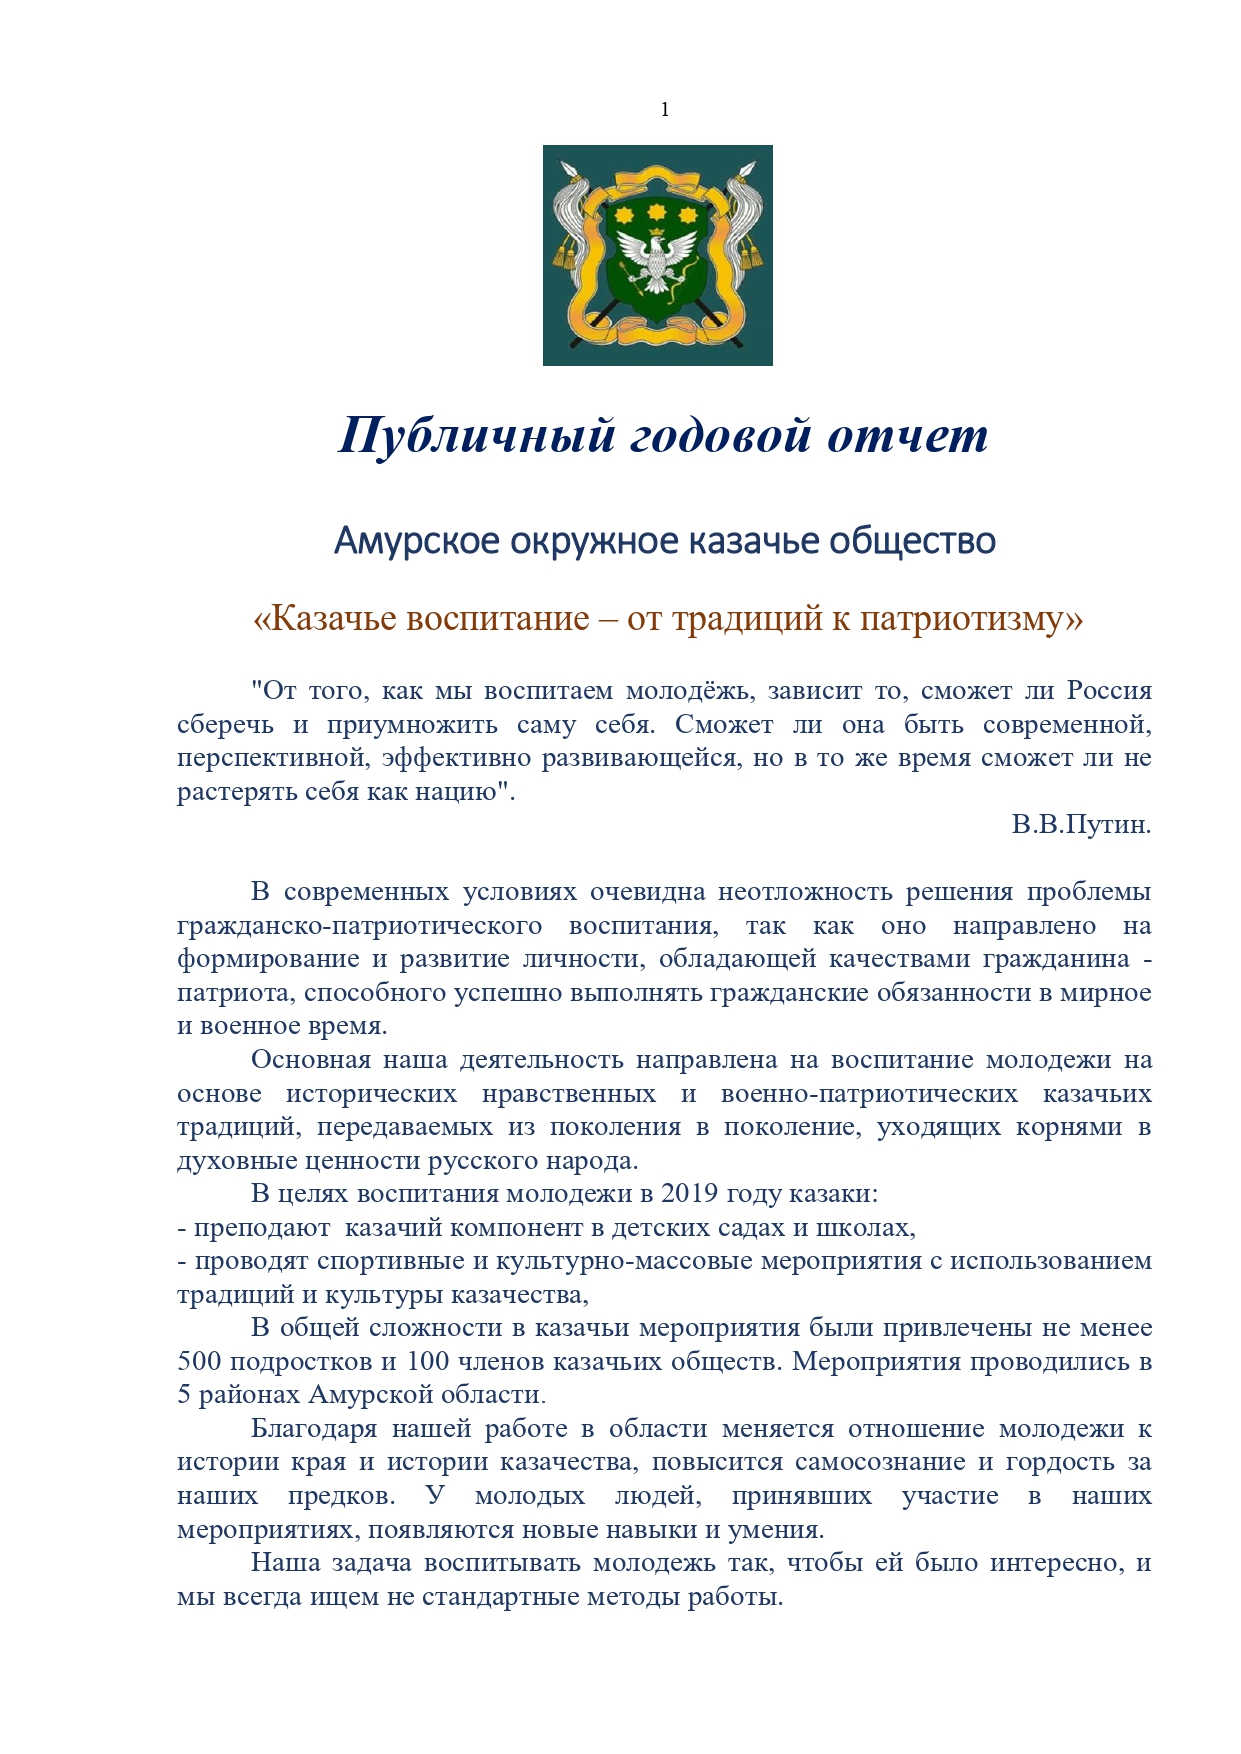 Публичный годовой отчет Амурского окружного казачьего общества за 2019 год Page 0001